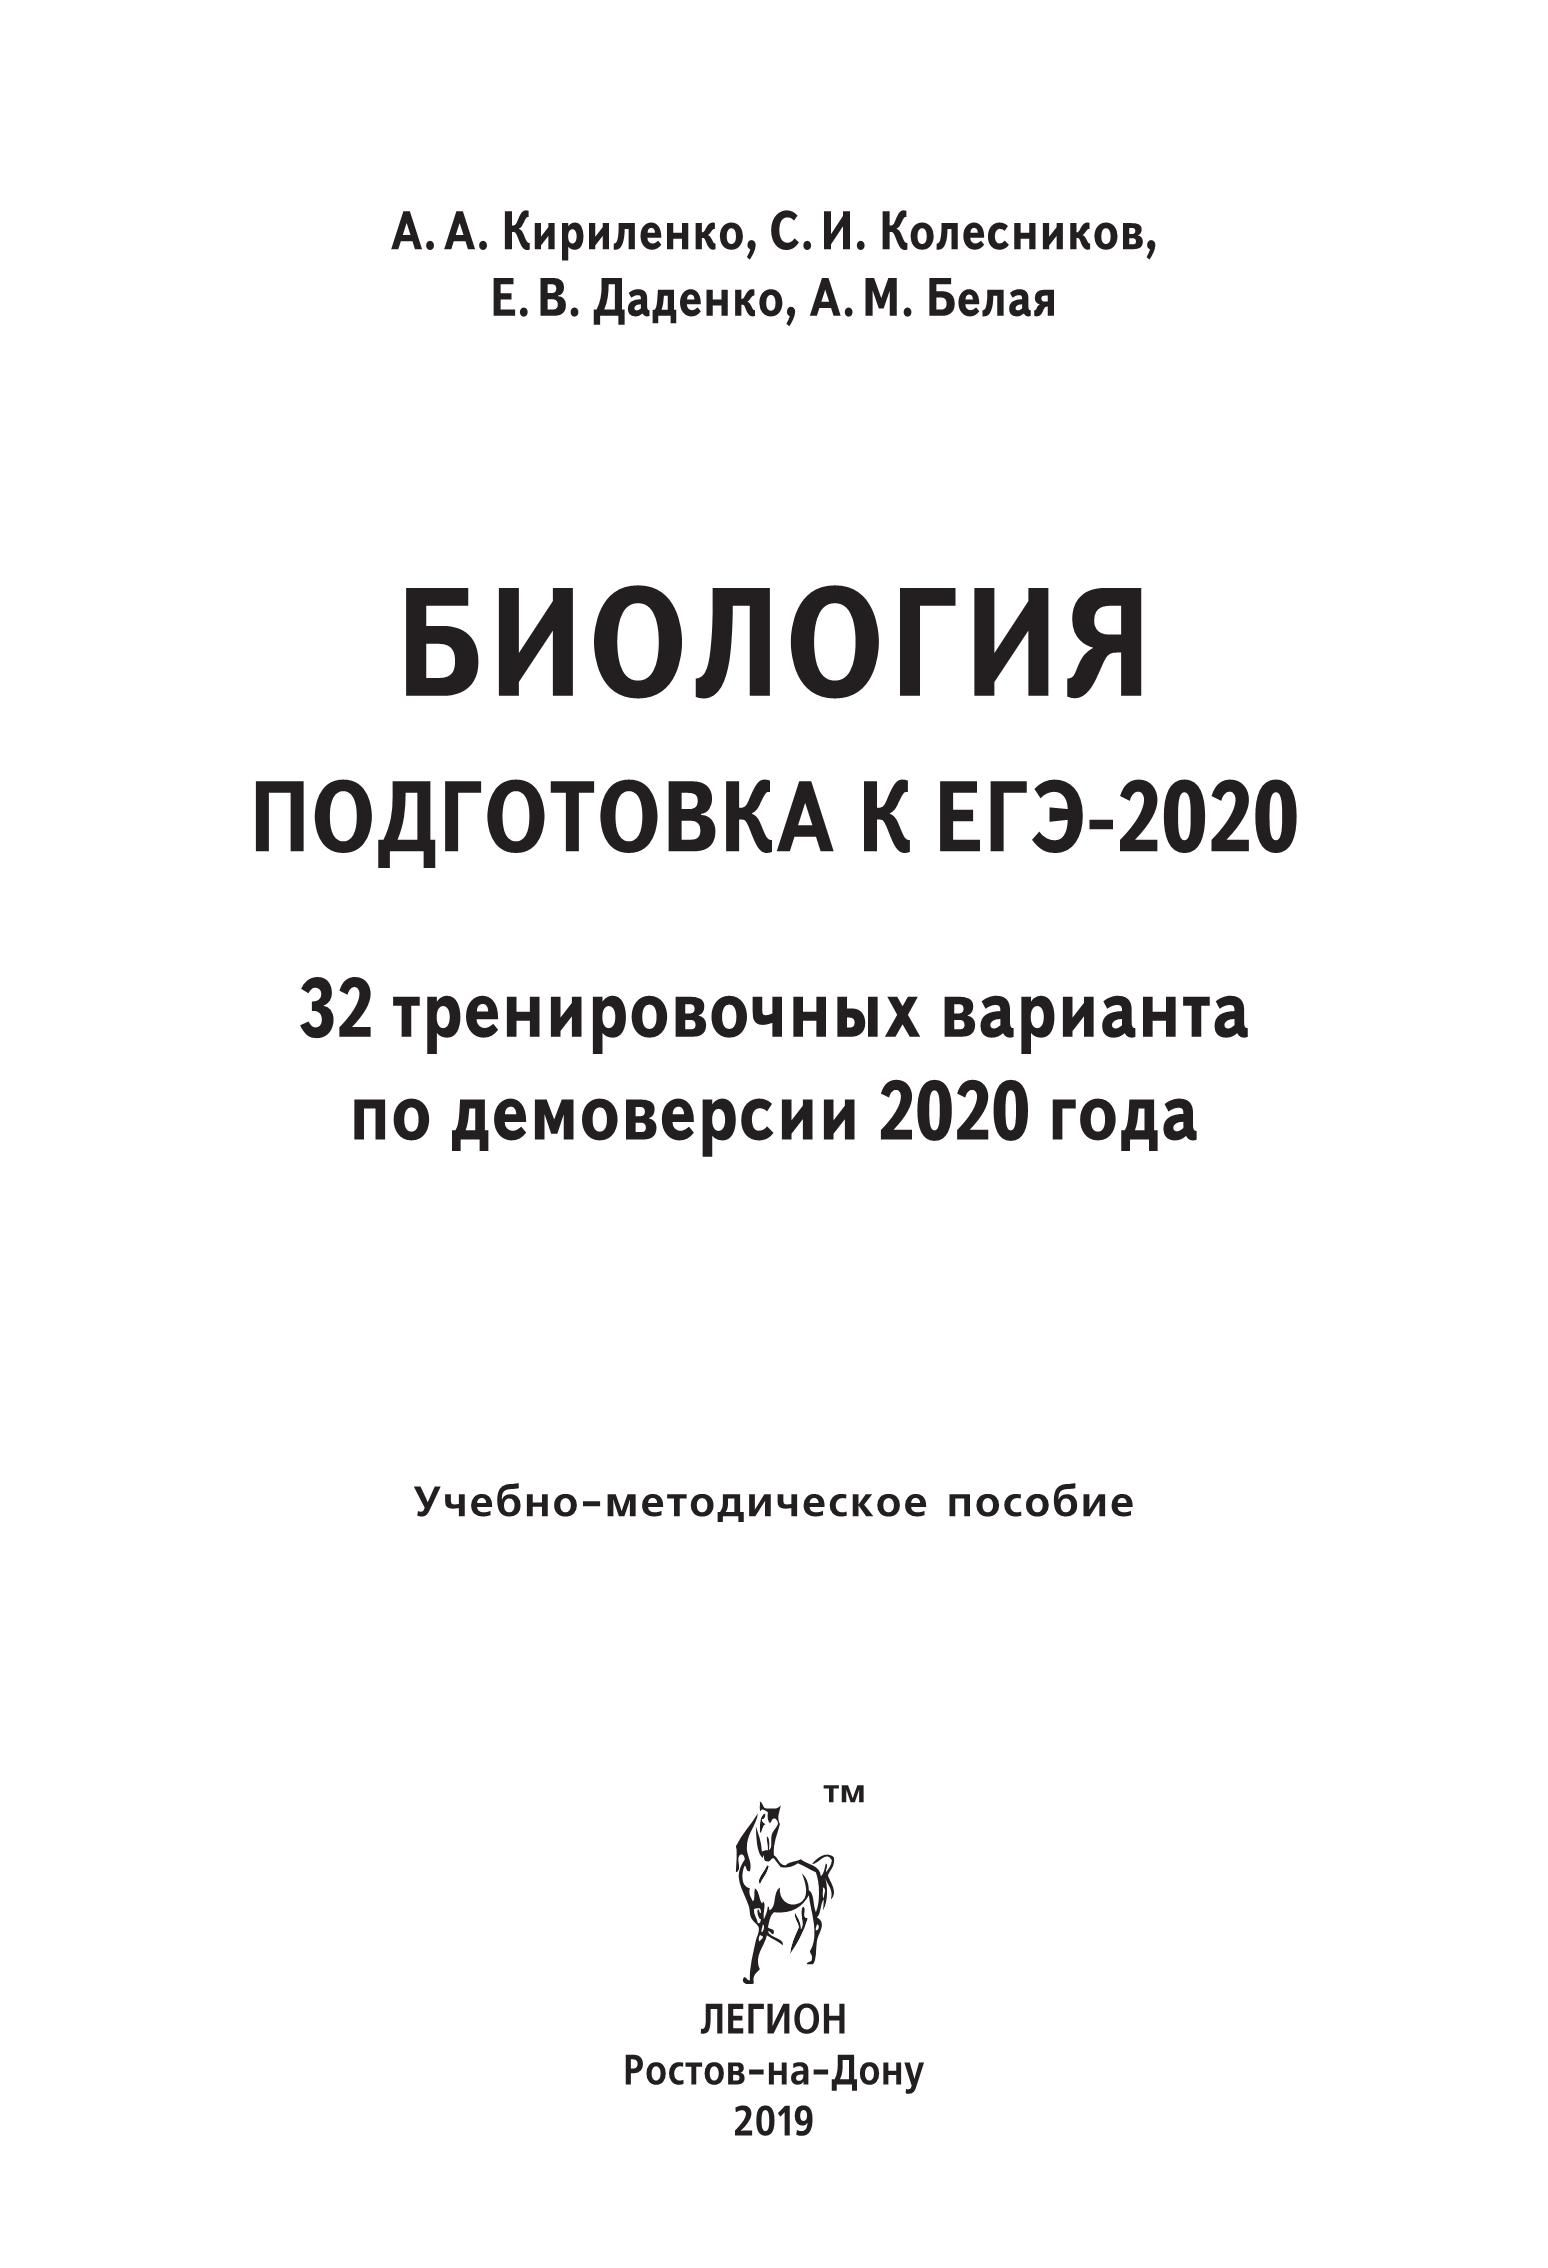 Биология. Подготовка к ЕГЭ-2020. 32 тренировочных варианта по демоверсии 2020 года